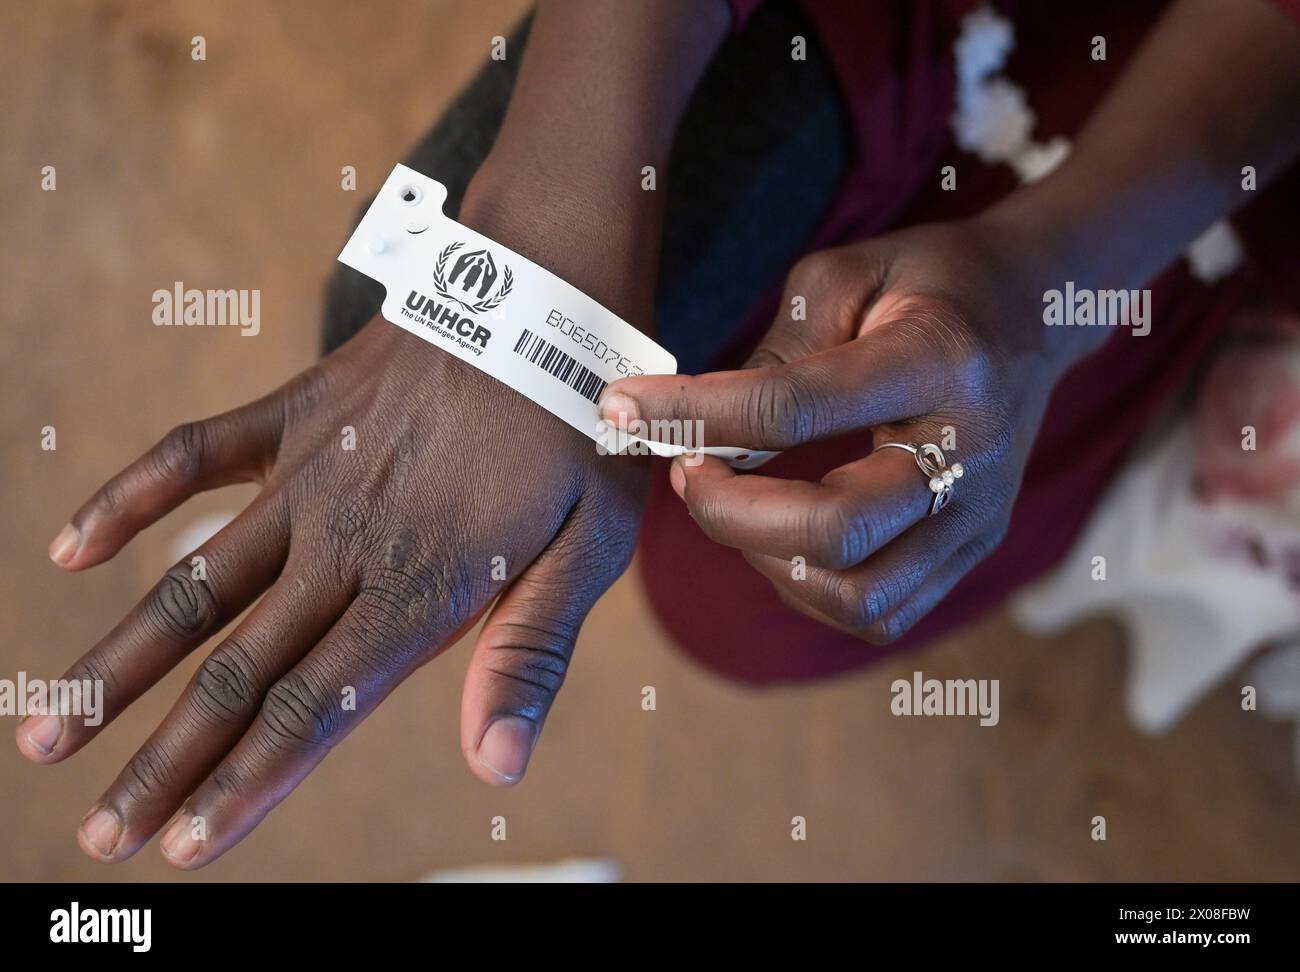 SUDAN DEL SUD, Stato dell'alto Nilo, stazione di frontiera Joda vicino a Renk, centro di transito per rifugiati dell'UNHCR per rifugiati dalla guerra in Sudan, dopo la registrazione vengono trasportati in altri campi nel Malakal e in altre regioni, codice di registrazione dell'UNHCR Foto Stock